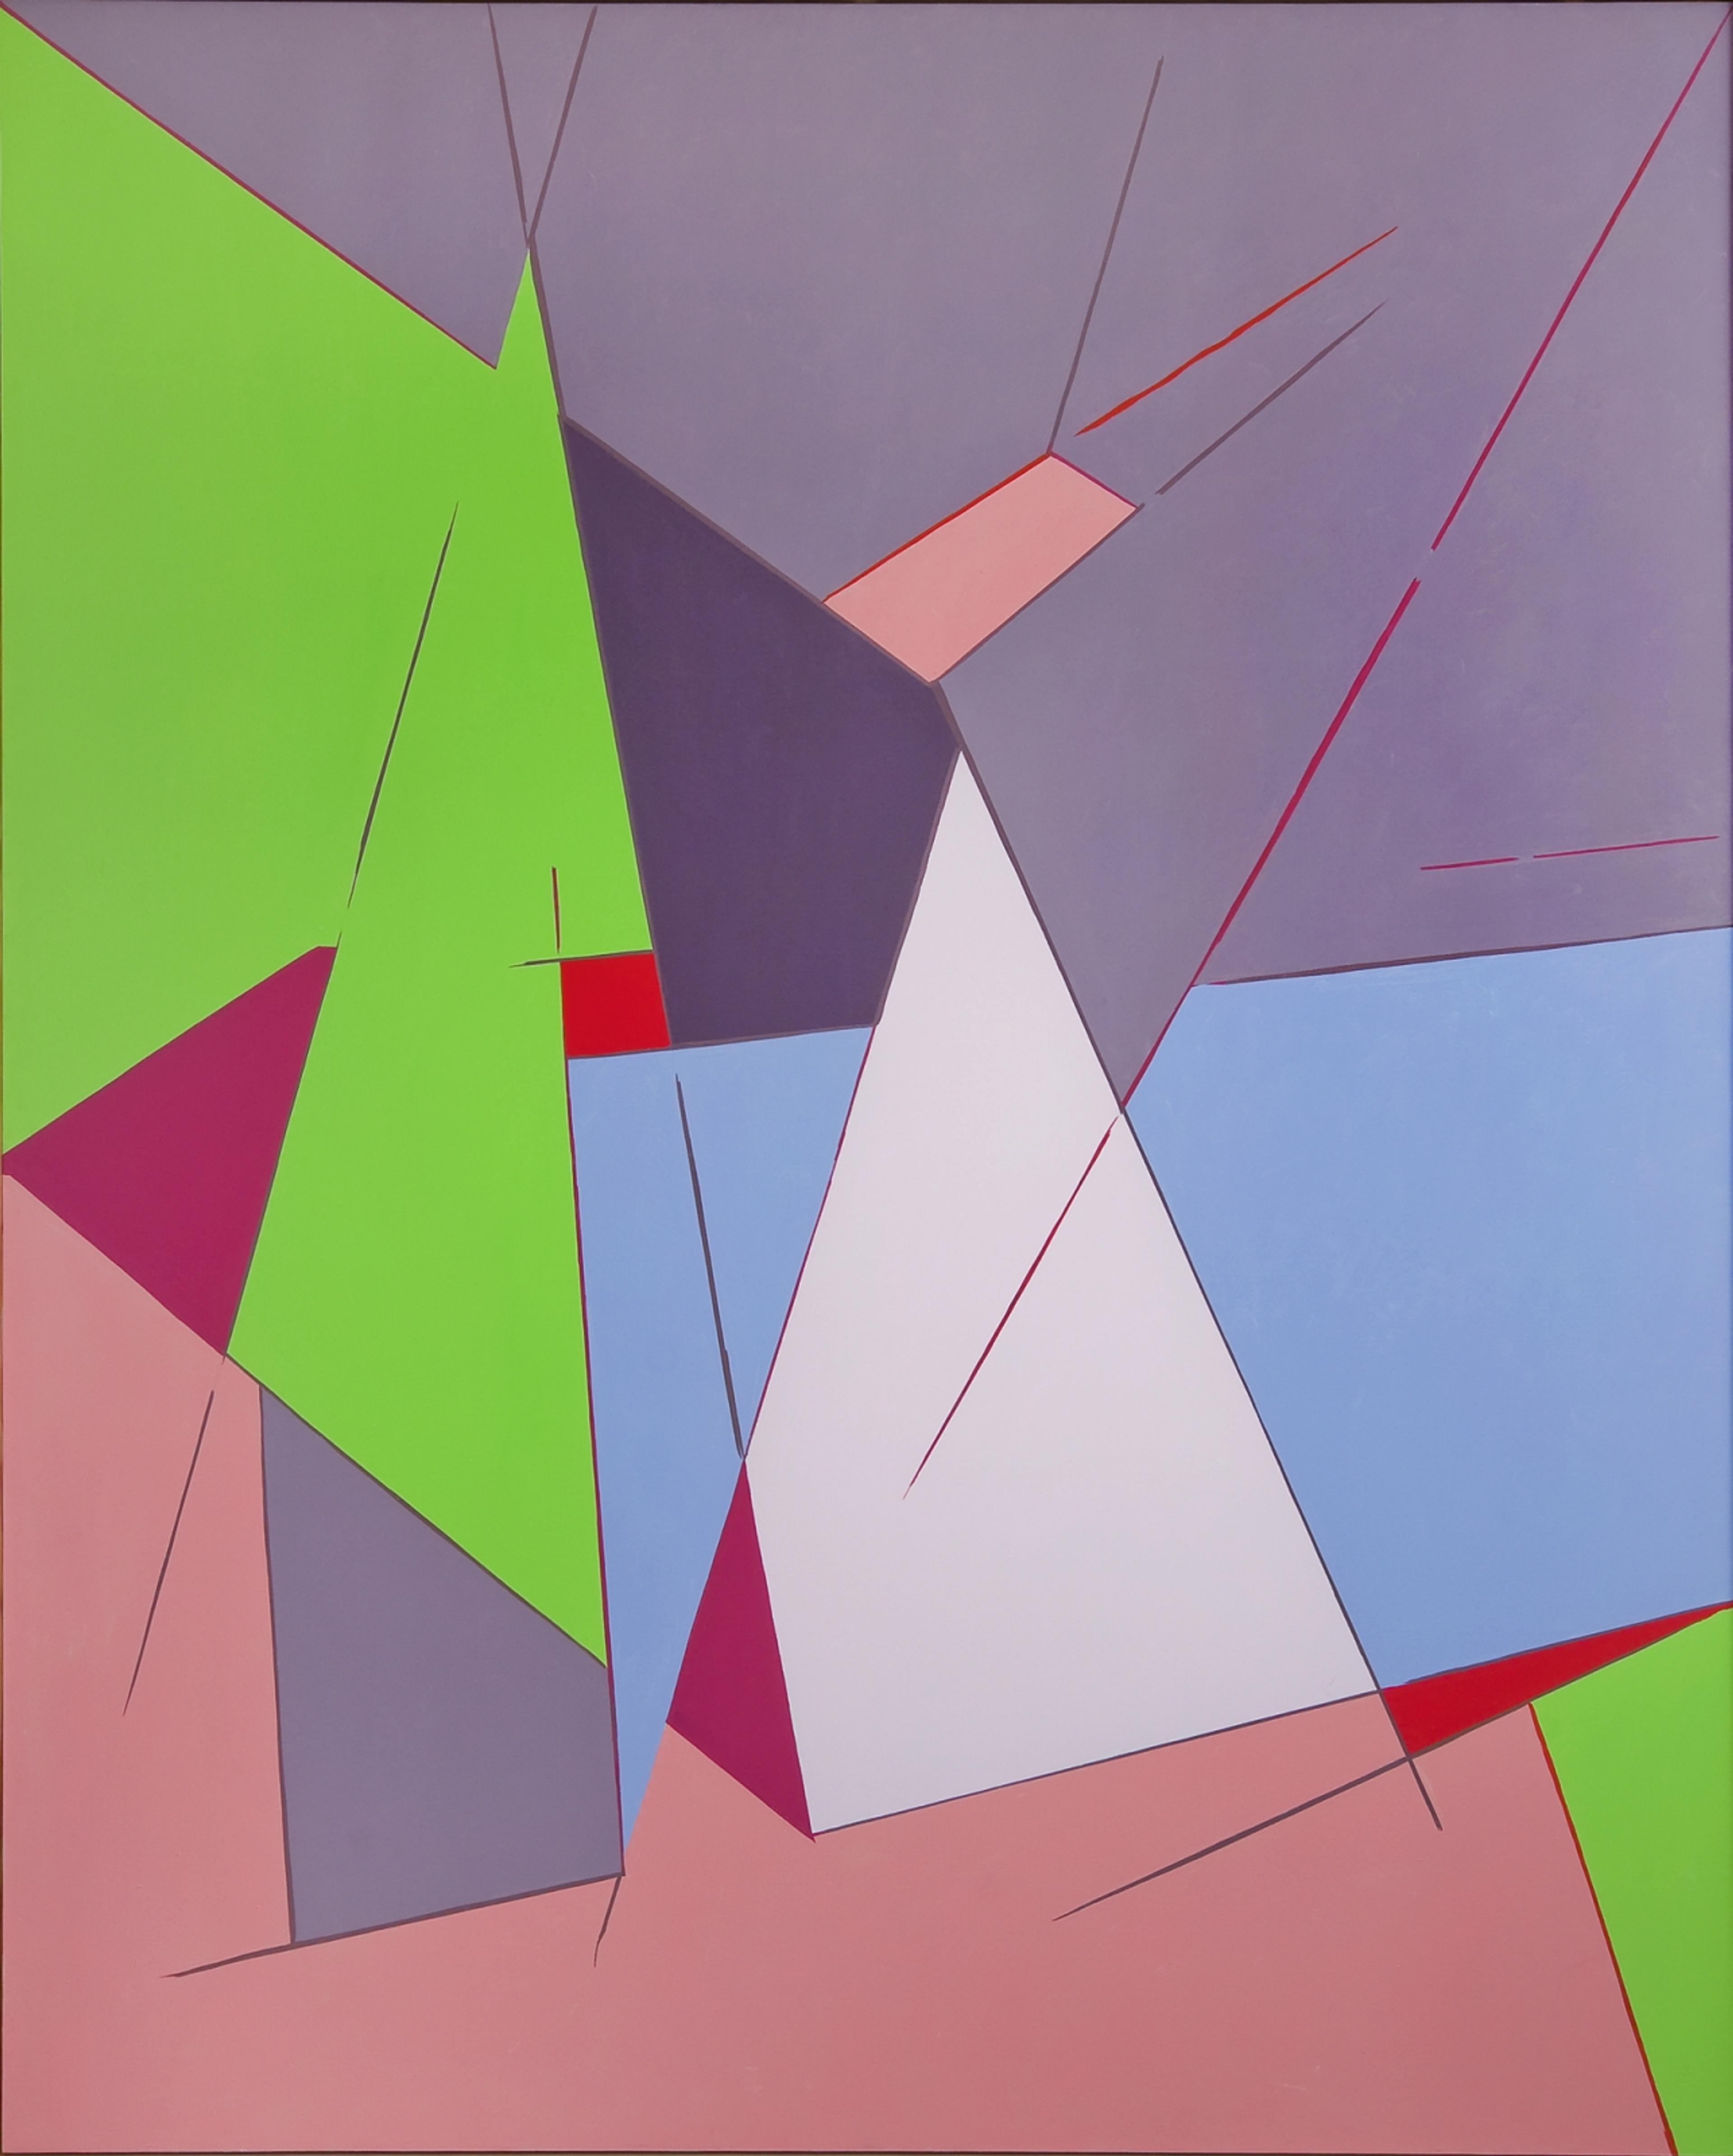 Et maleri i sterke farger satt sammen i kvadratiske former.